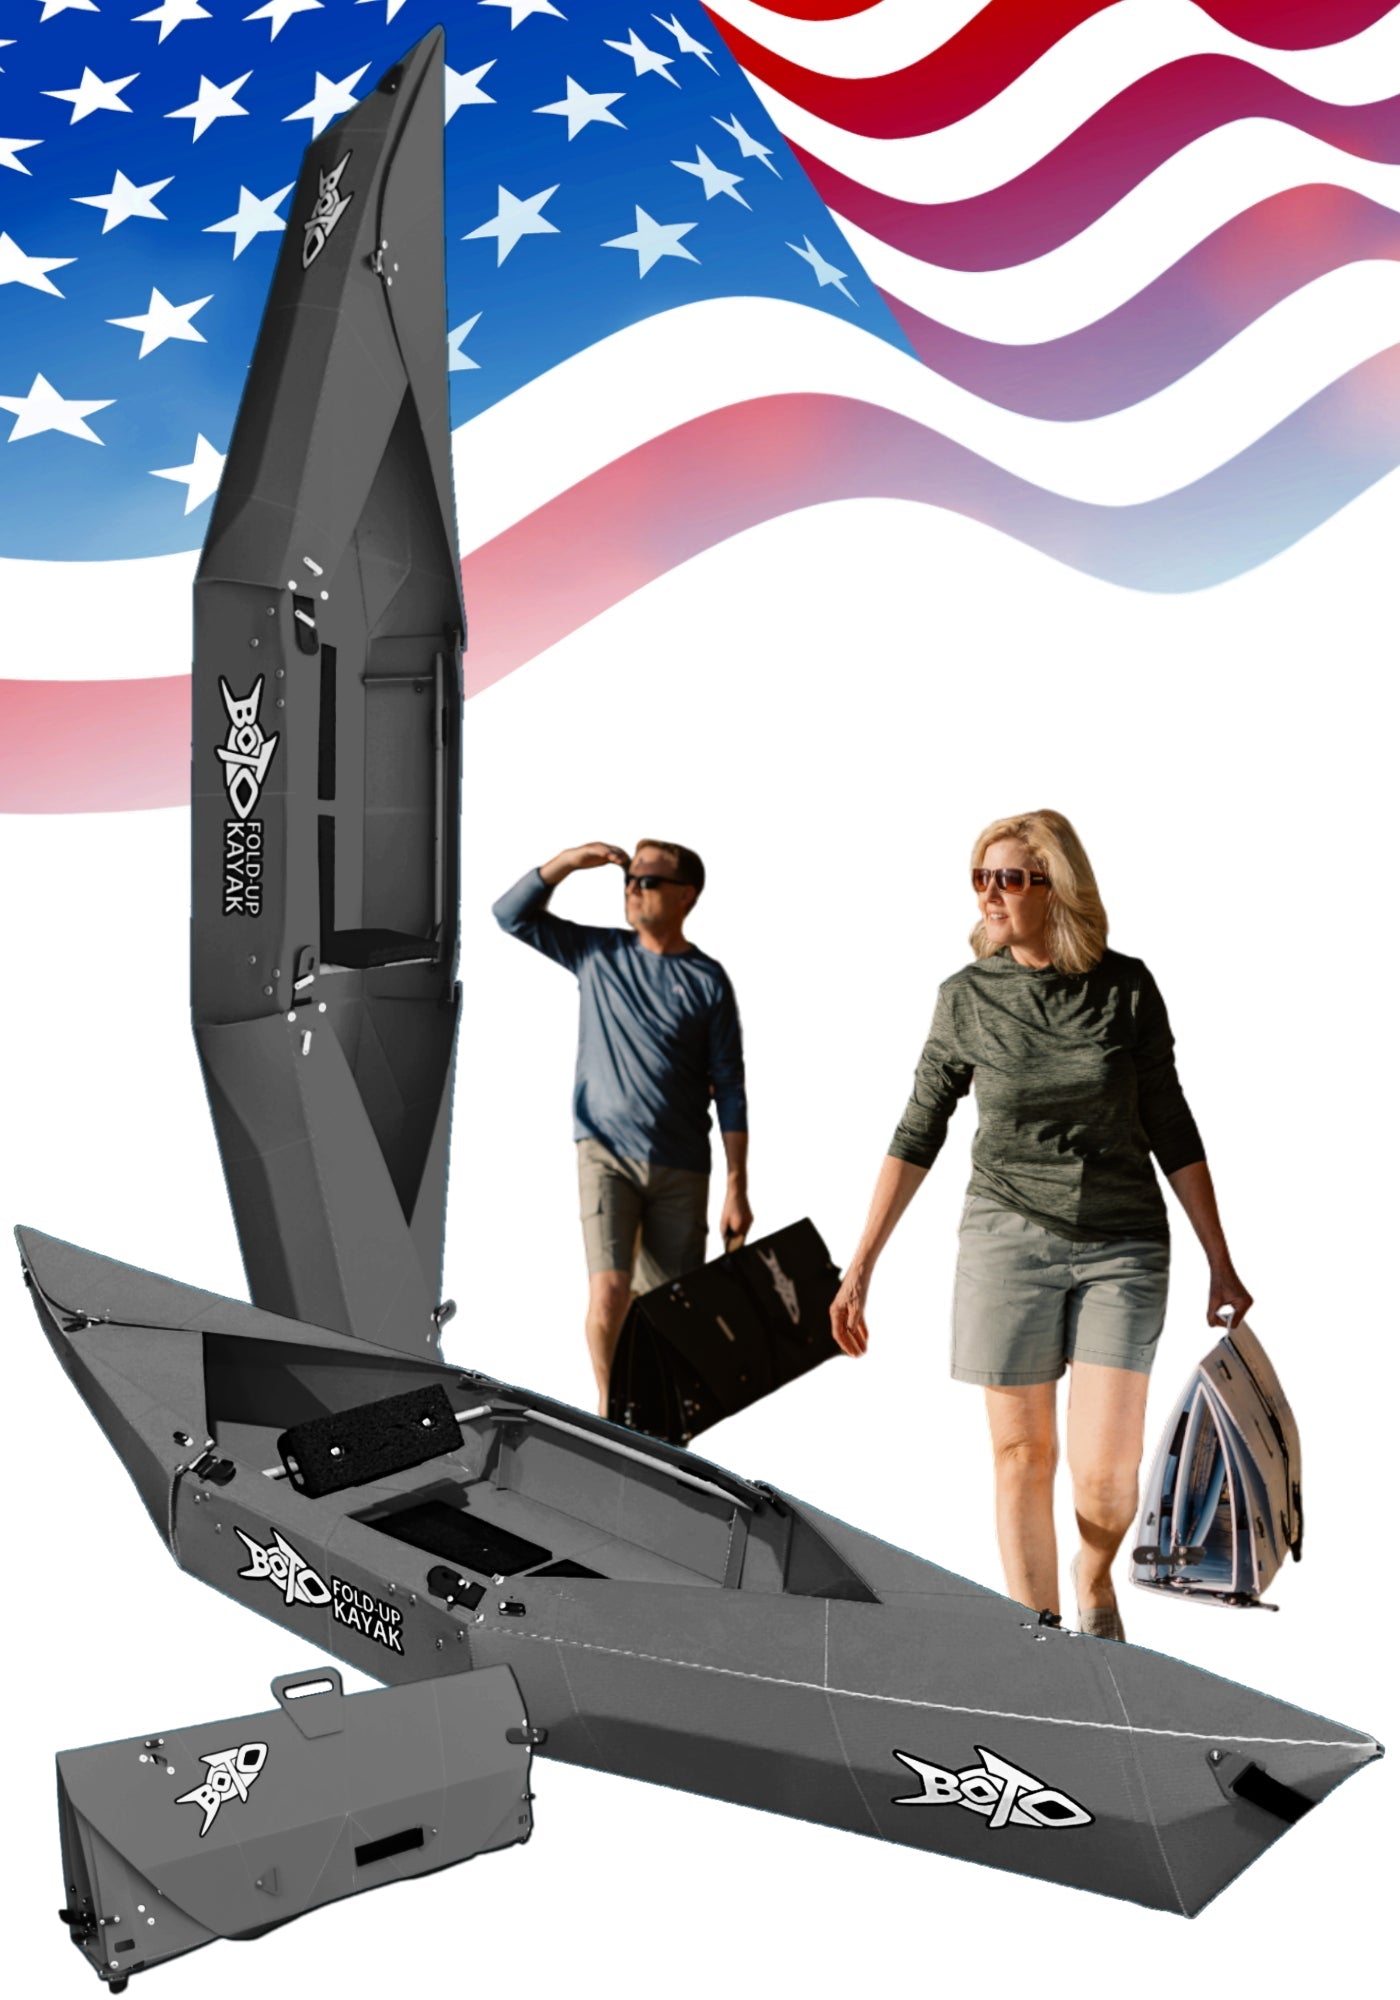 BOTO Ten Pound Fold-up Kayak | 2 minute assembly | Folding Portable Kayak